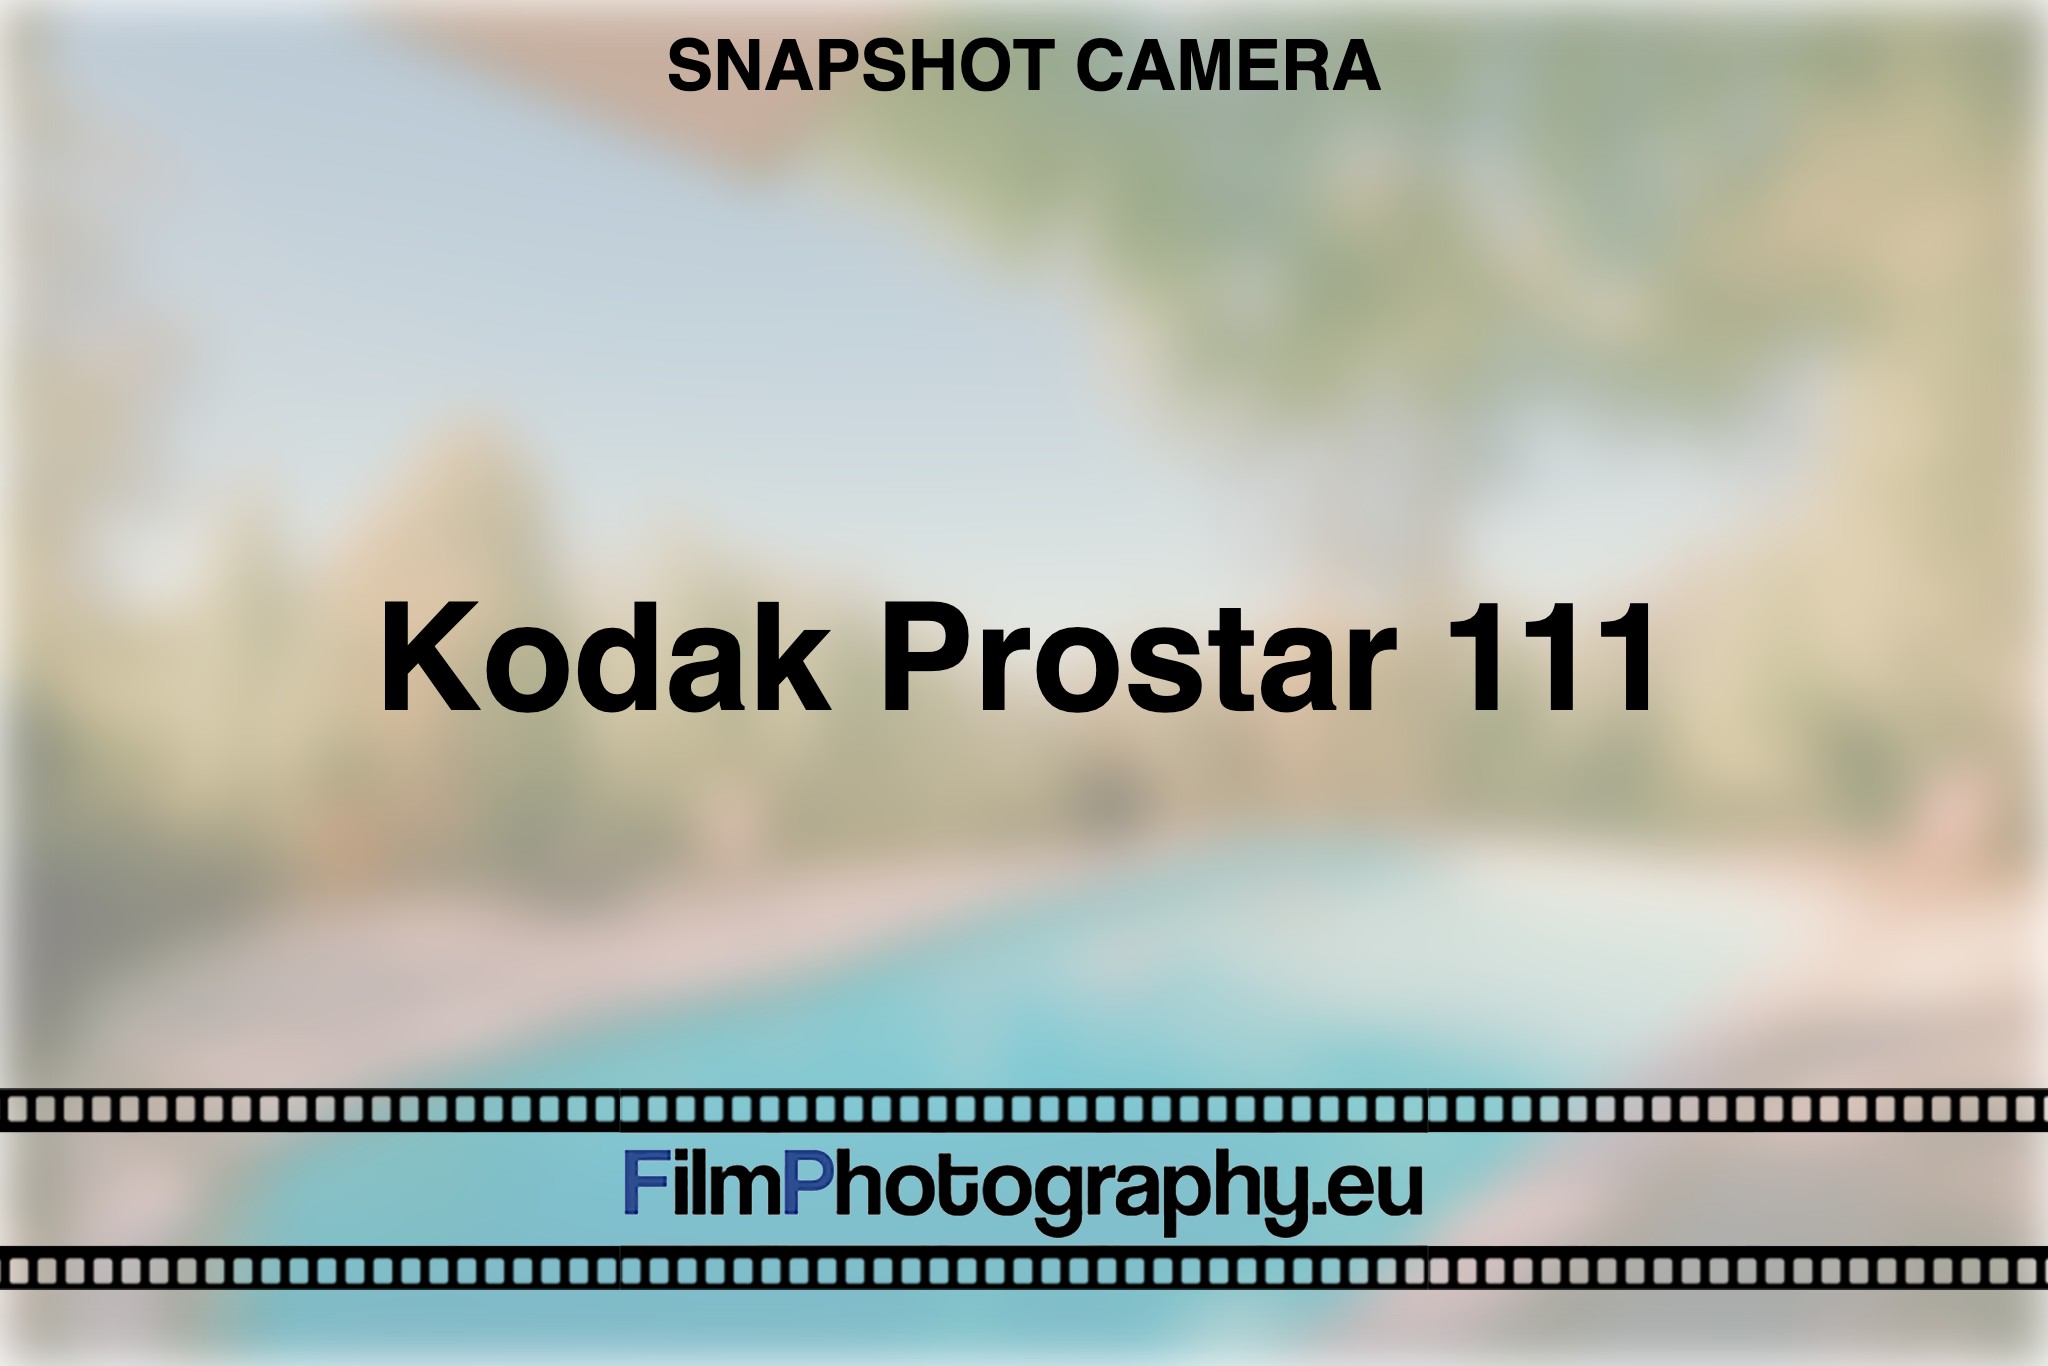 kodak-prostar-111-snapshot-camera-bnv